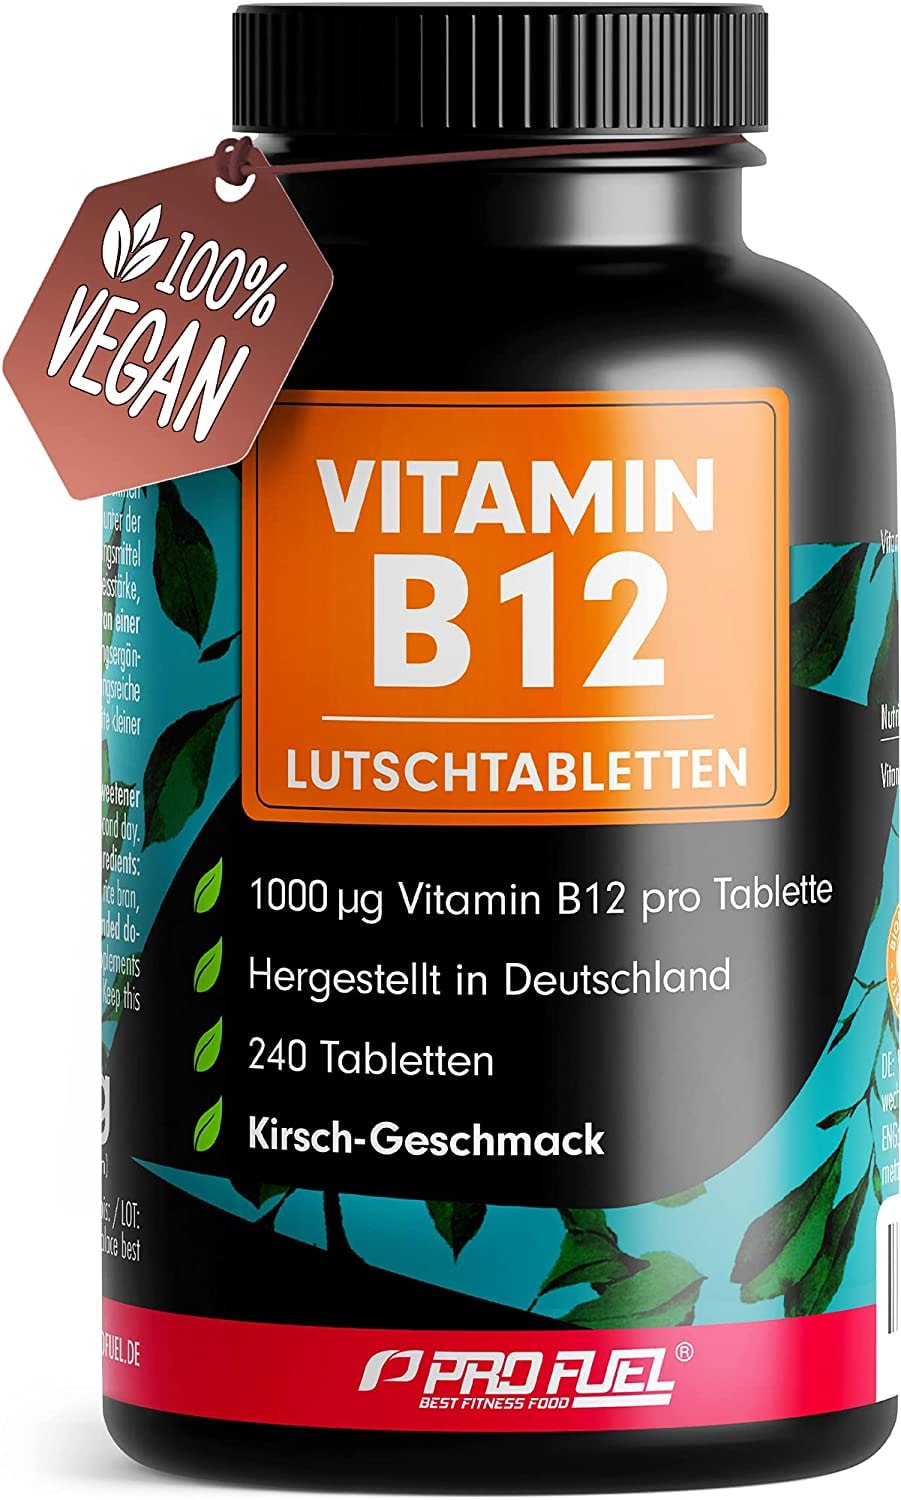 ProFuel Vitamin B12 Lutschtabletten 240x KIRSCHE - 1000µg (mcg) aktives Methylcobalamin B12 - leckerer Geschmack - vegan & hochdosiert - vegane Tabletten zum Lutschen - Ohne Zuckerzusatz - mit Xylit gesüßt